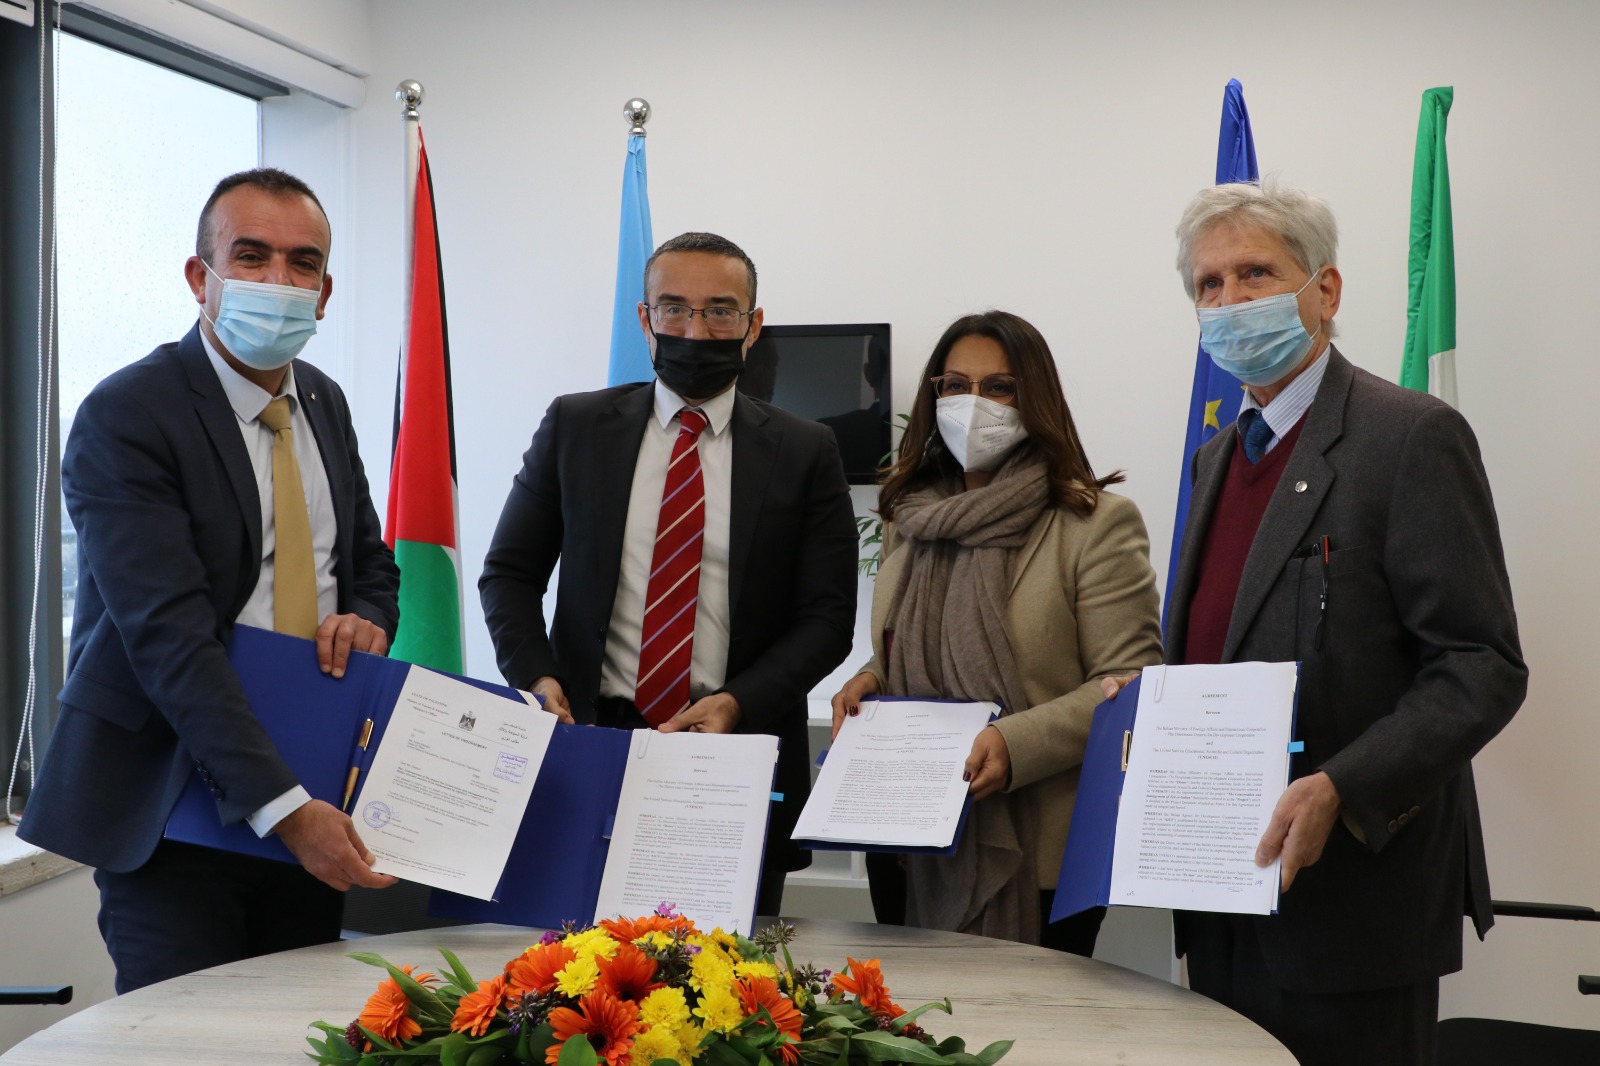 توقيع اتفاقية لتأهيل موقع تل السلطان الاثري في أريحا بقيمة 2.4 مليون يورو